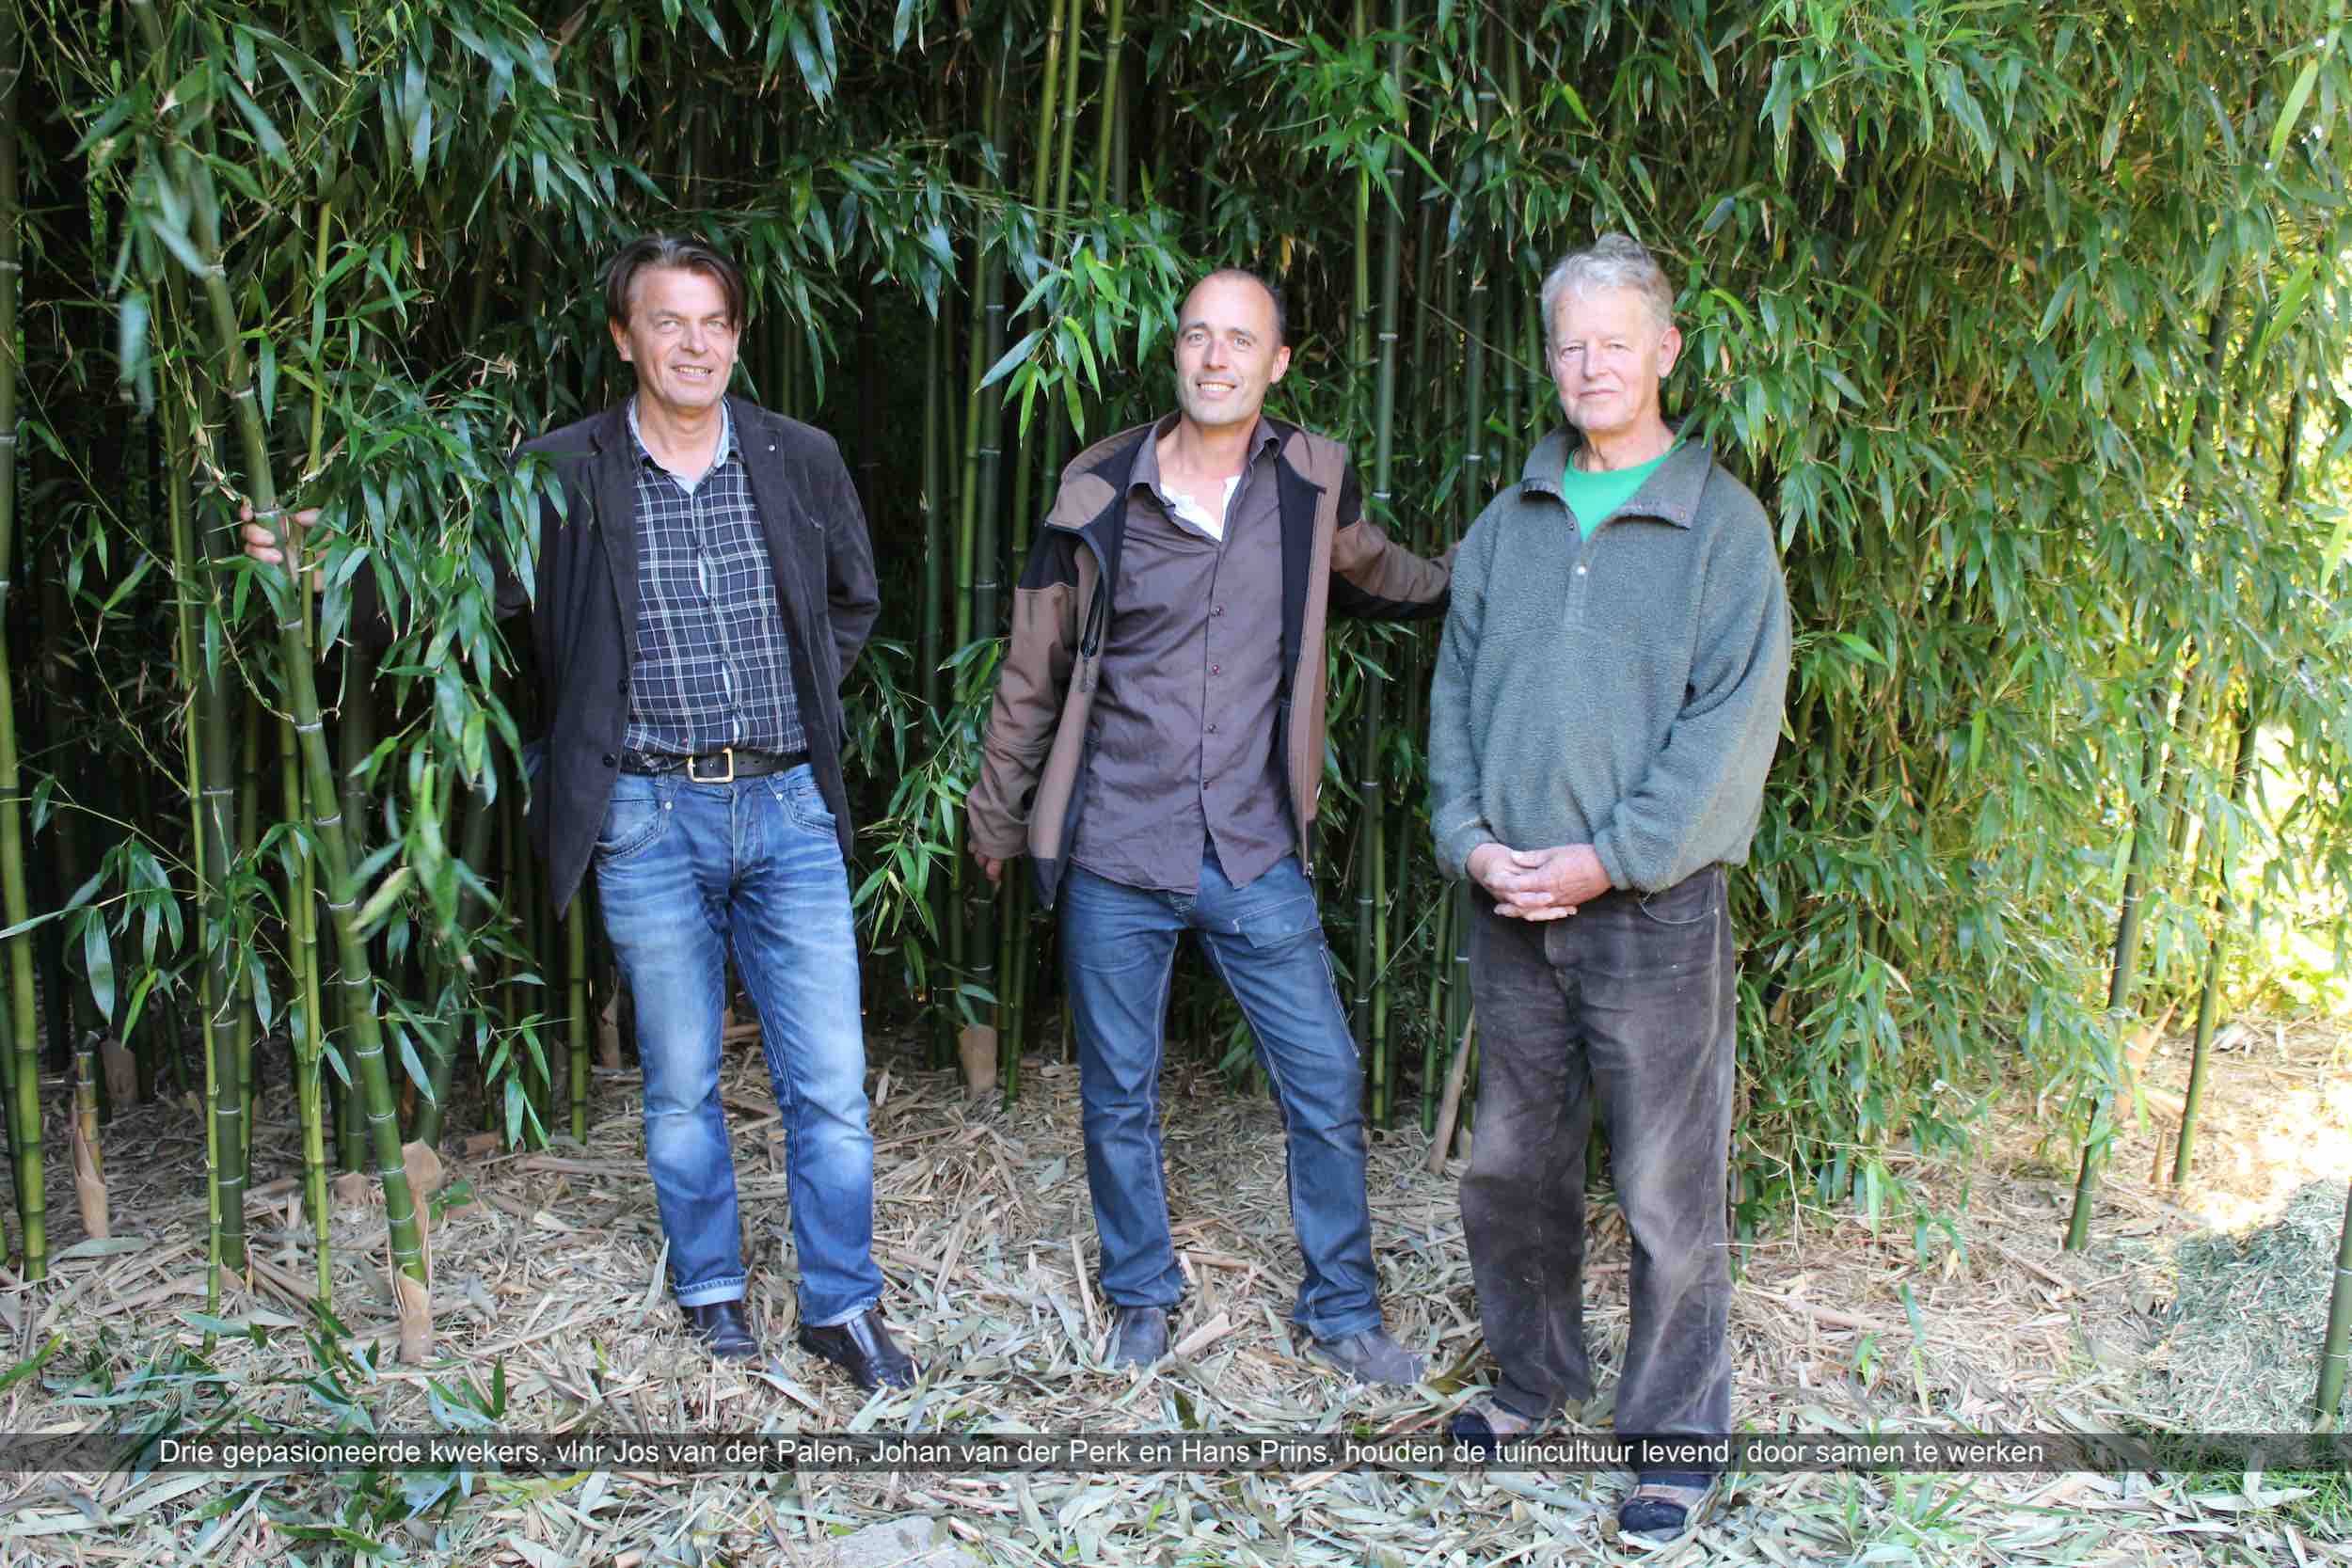 Drie gepasioneerde kwekers vlnr Jos van der Palen Johan van der Perk en Hans Prins houden de tuincultuur levend door samen te werken Kimmei com PerkBamboo com DeGroenePrins com